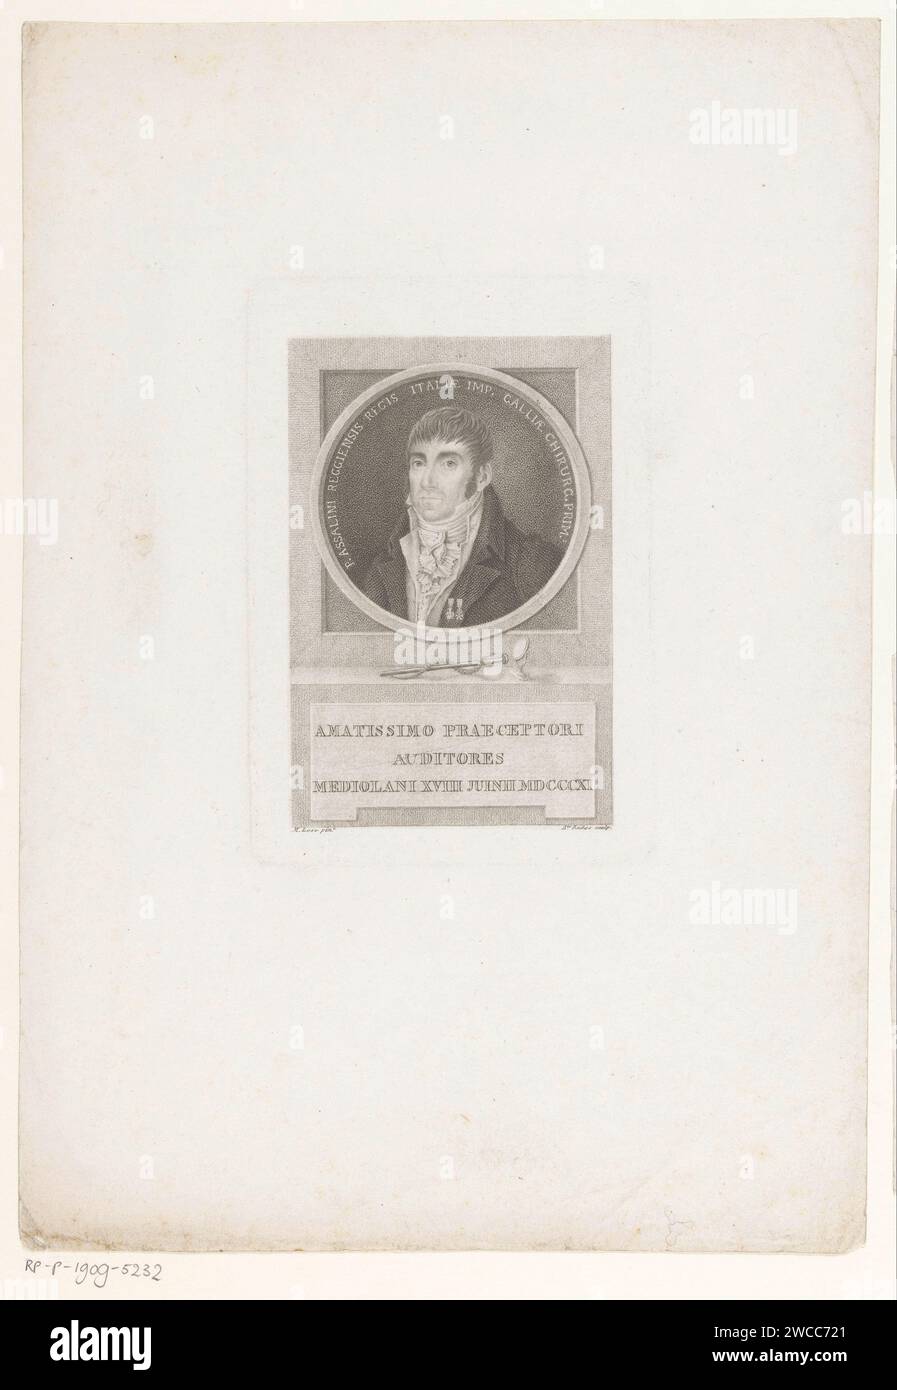 Portret Van Chirrg P. Asallini, Luigi Rados, nach M. Lose, 1783 - Druck Italien Papier graviert historische Personen. Barbier; Chirurg (+ Porträt des Gelehrten, Wissenschaftlers) Stockfoto